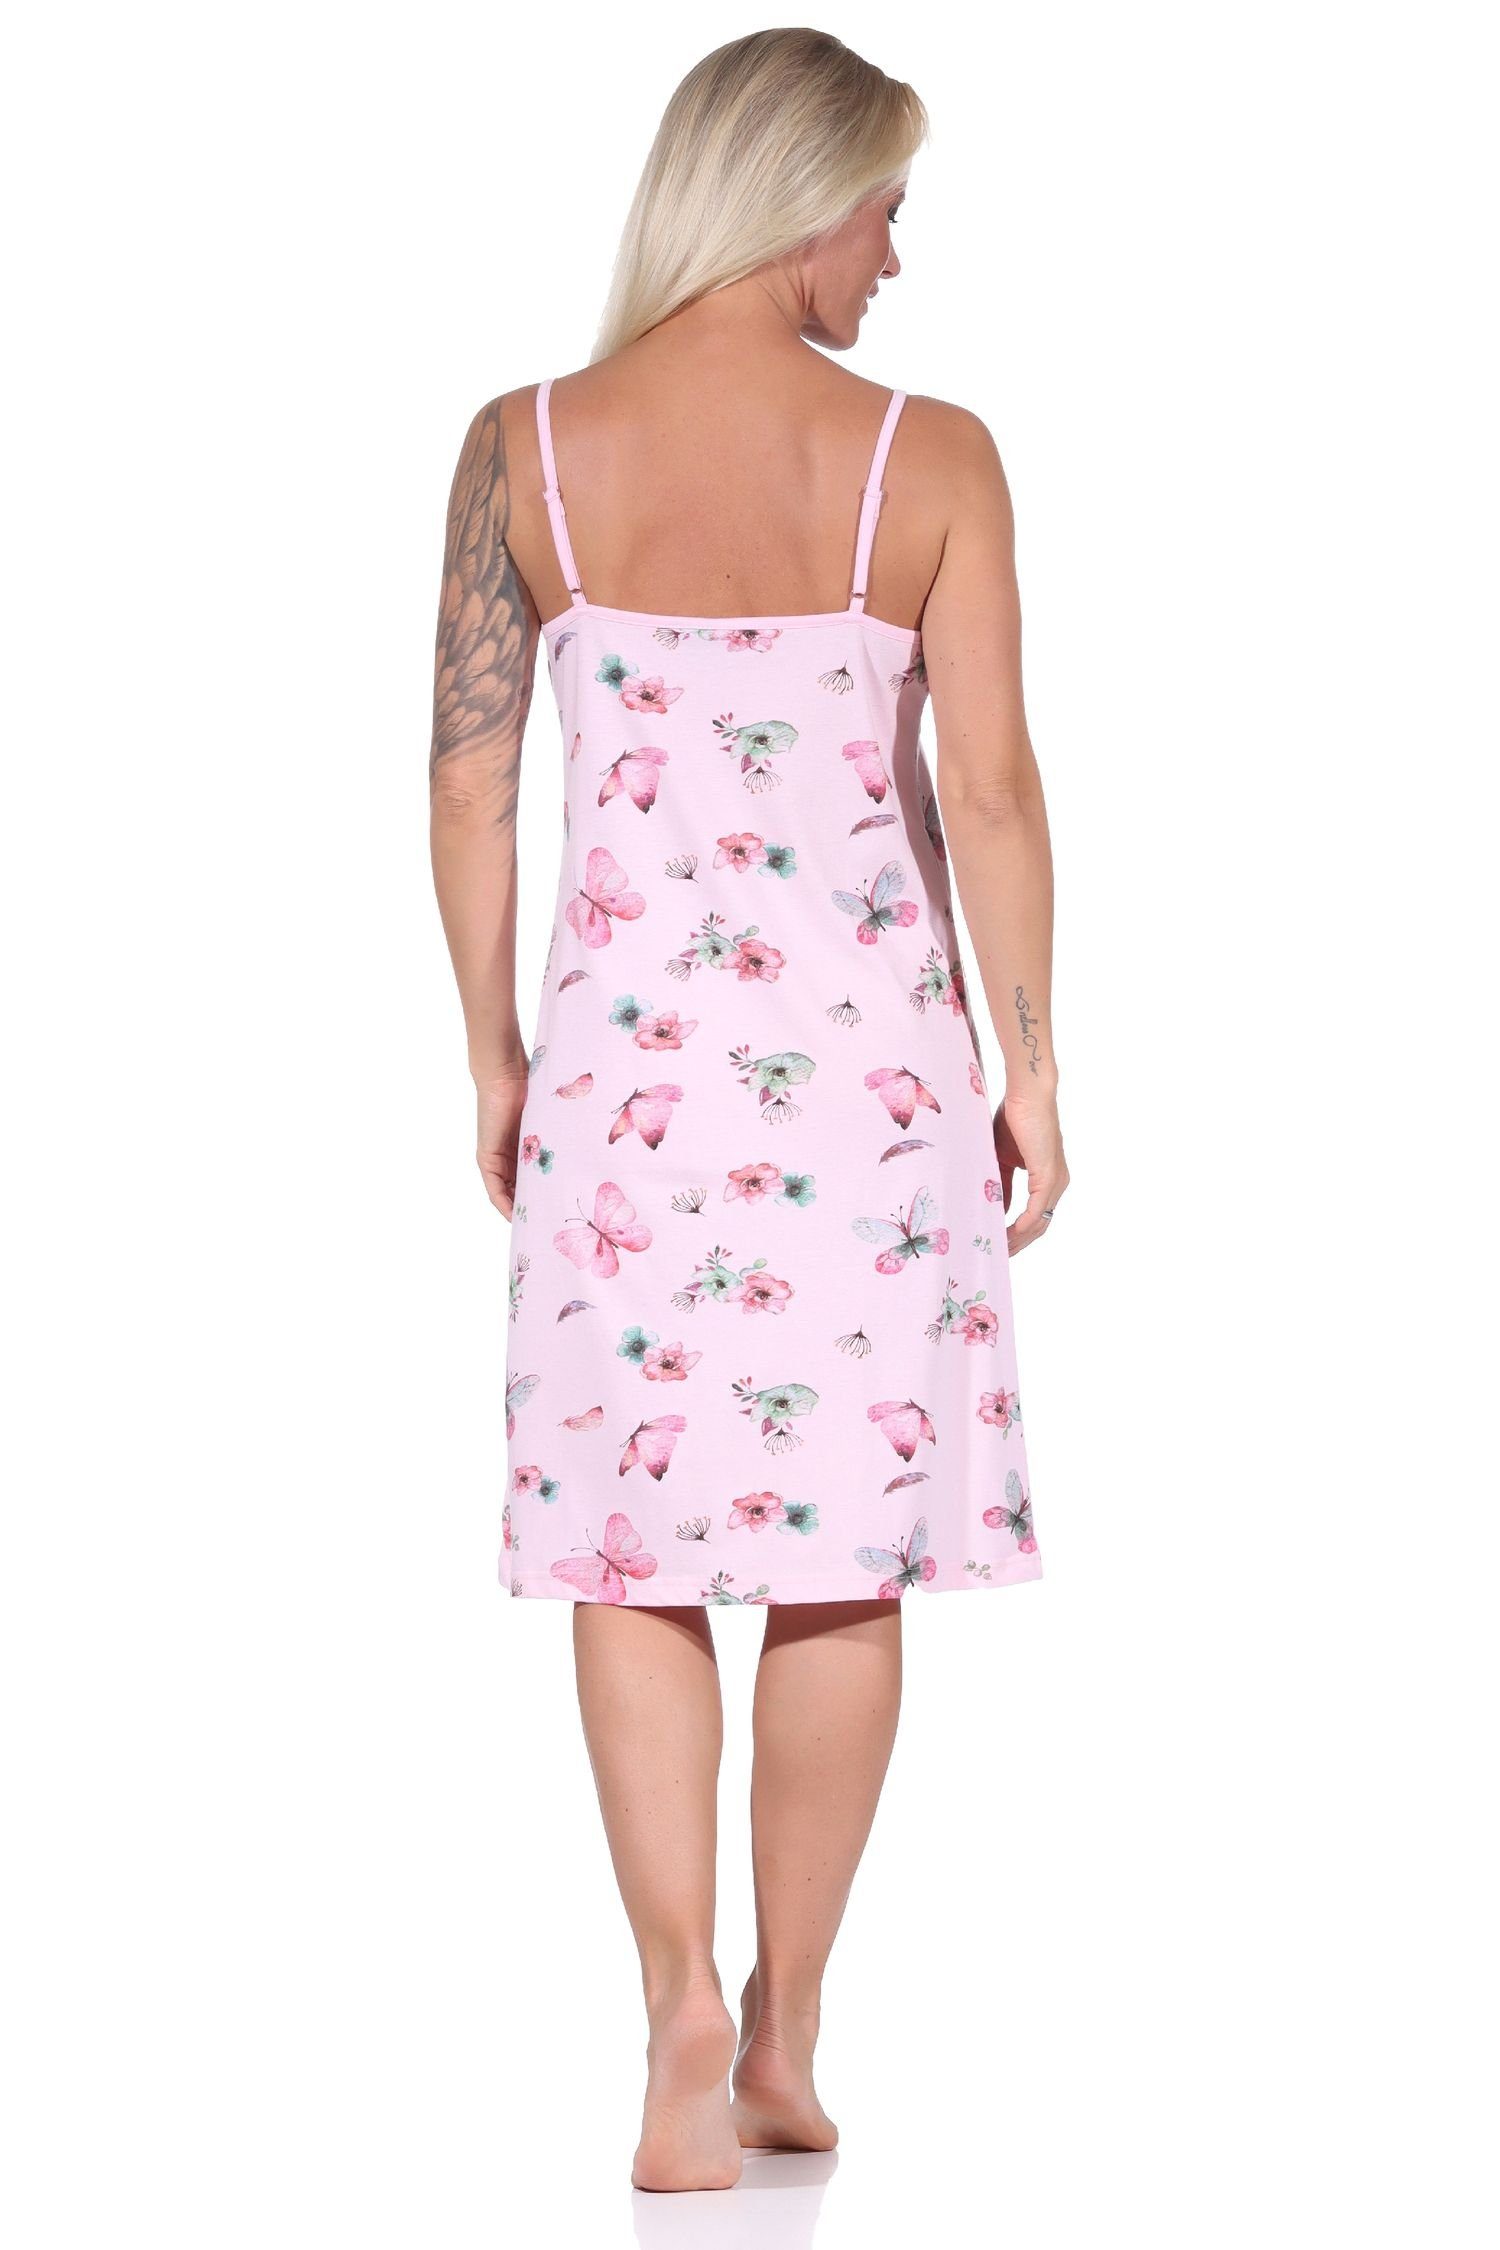 Normann Nachthemd Damen rosa - auch Übergrößen Nachthemd, Design florales in Spaghetti